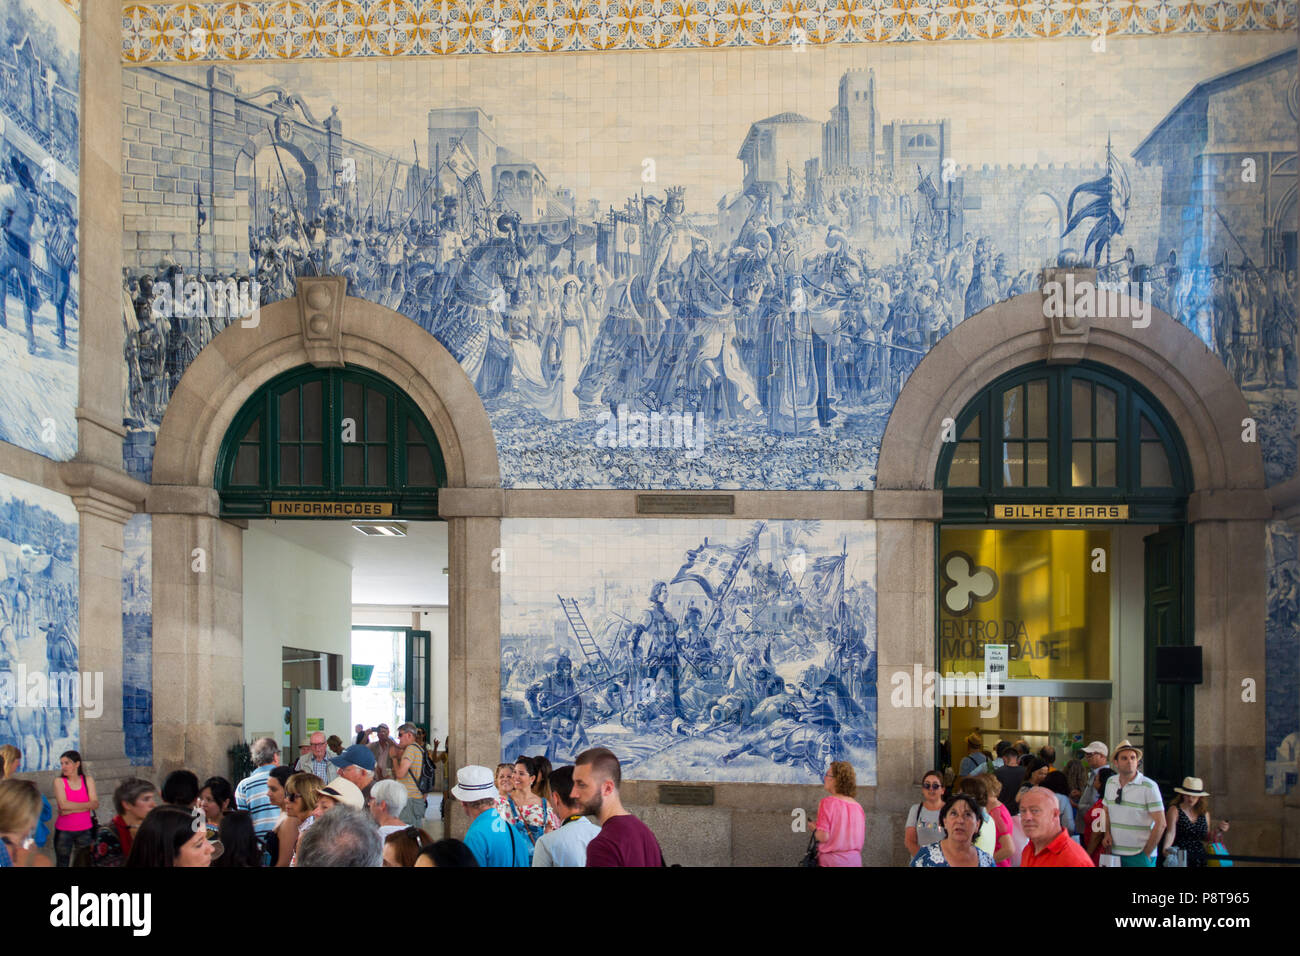 La gare d'Aveiro, Portugal avec son célèbre carreaux bleus (azulejos) illustrant la vie et l'histoire portugaise autour des murs. Banque D'Images